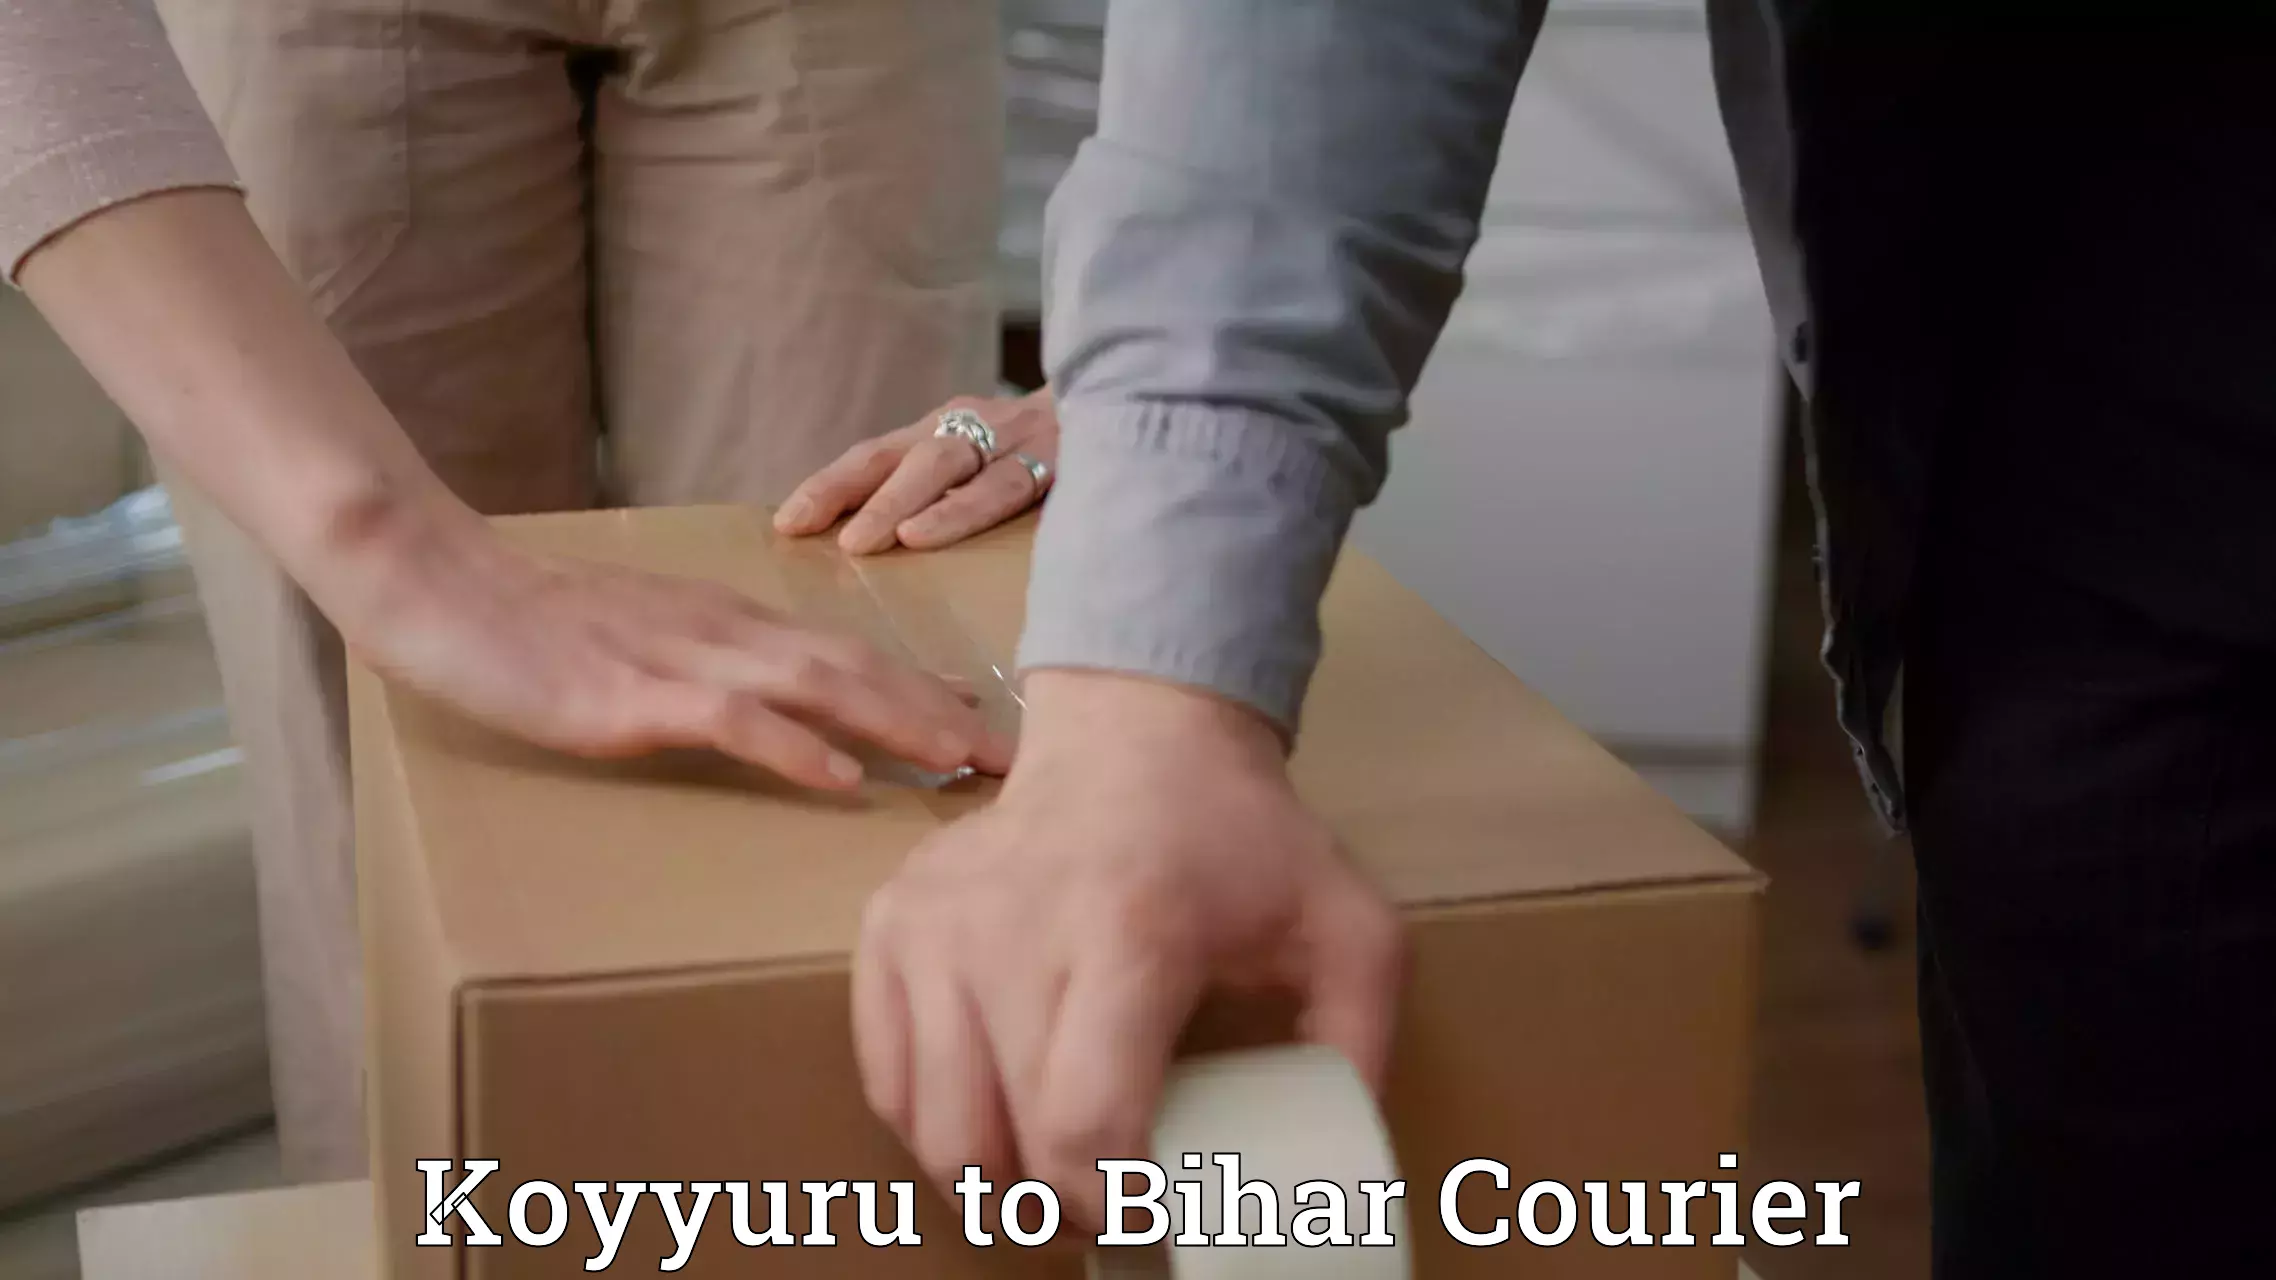 24/7 courier service Koyyuru to Bhojpur